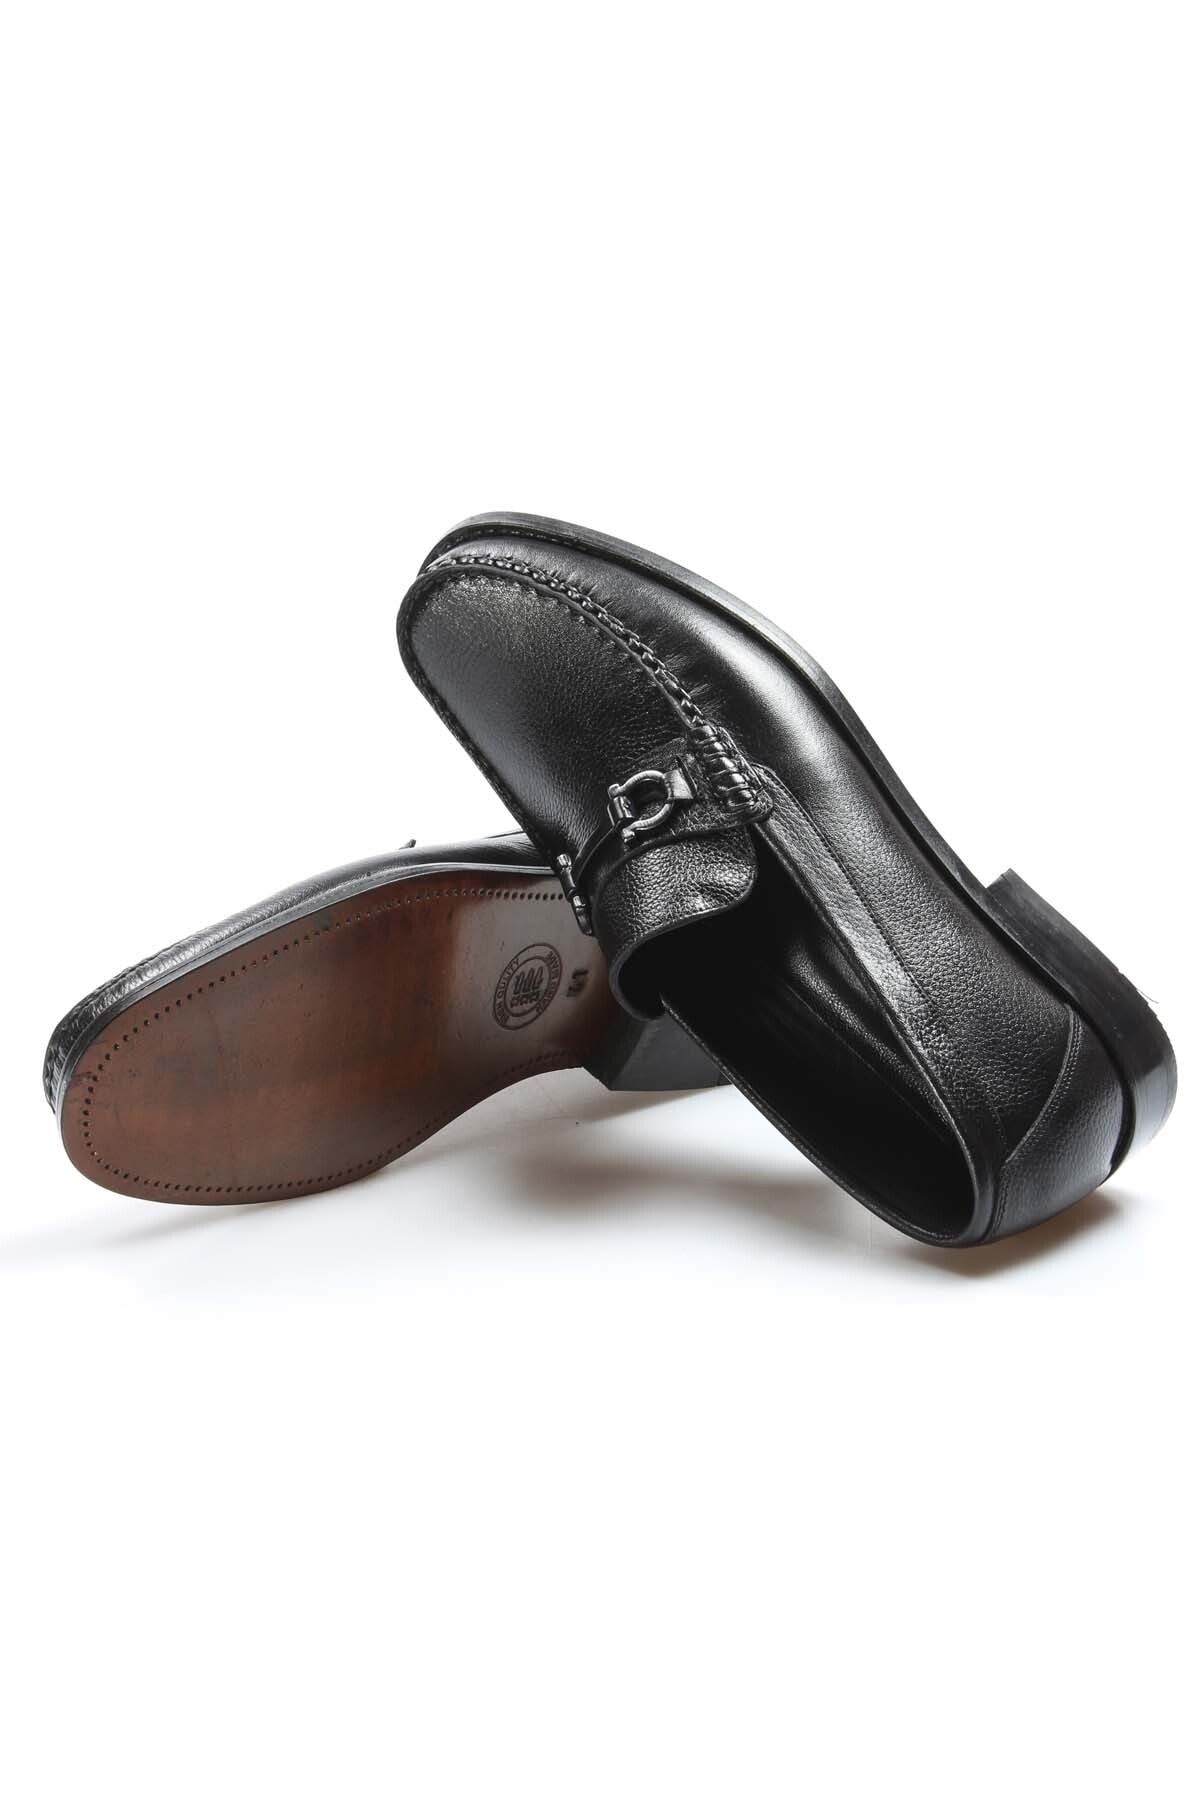 Ayakkabıhane Kösele Taban Içi Dışı Hakiki Deri Tokalı Siyah Erkek Klasik Ayakkabı Ah0893213272